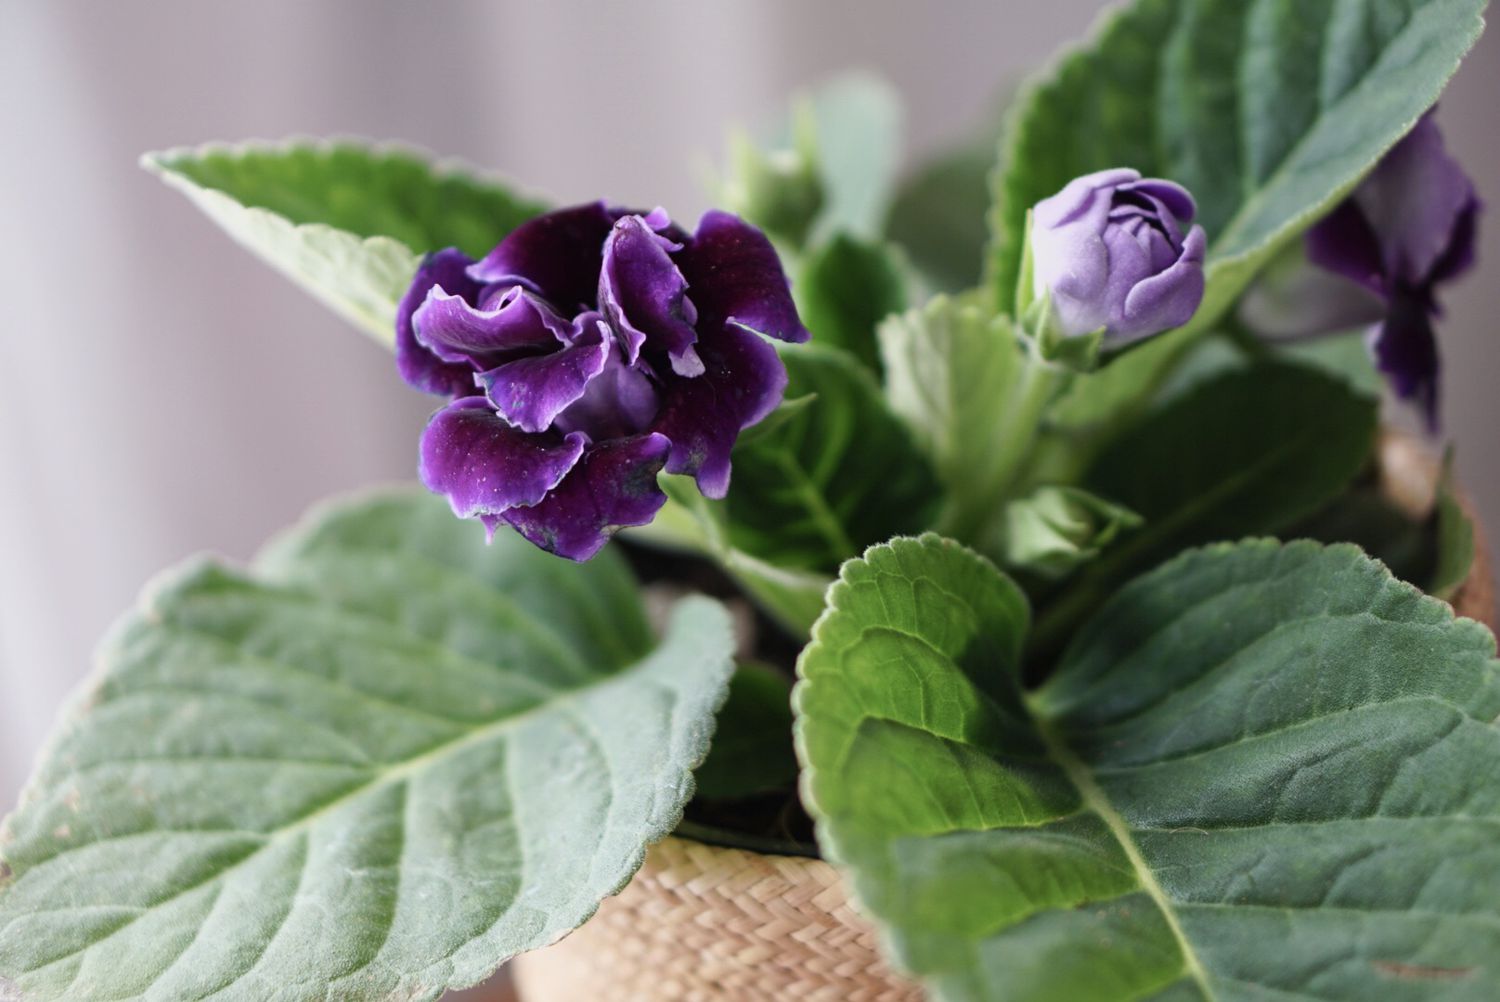 Gloxinia senningia Hybridpflanze mit violetter Blüte und hellvioletter Knospe in Nahaufnahme